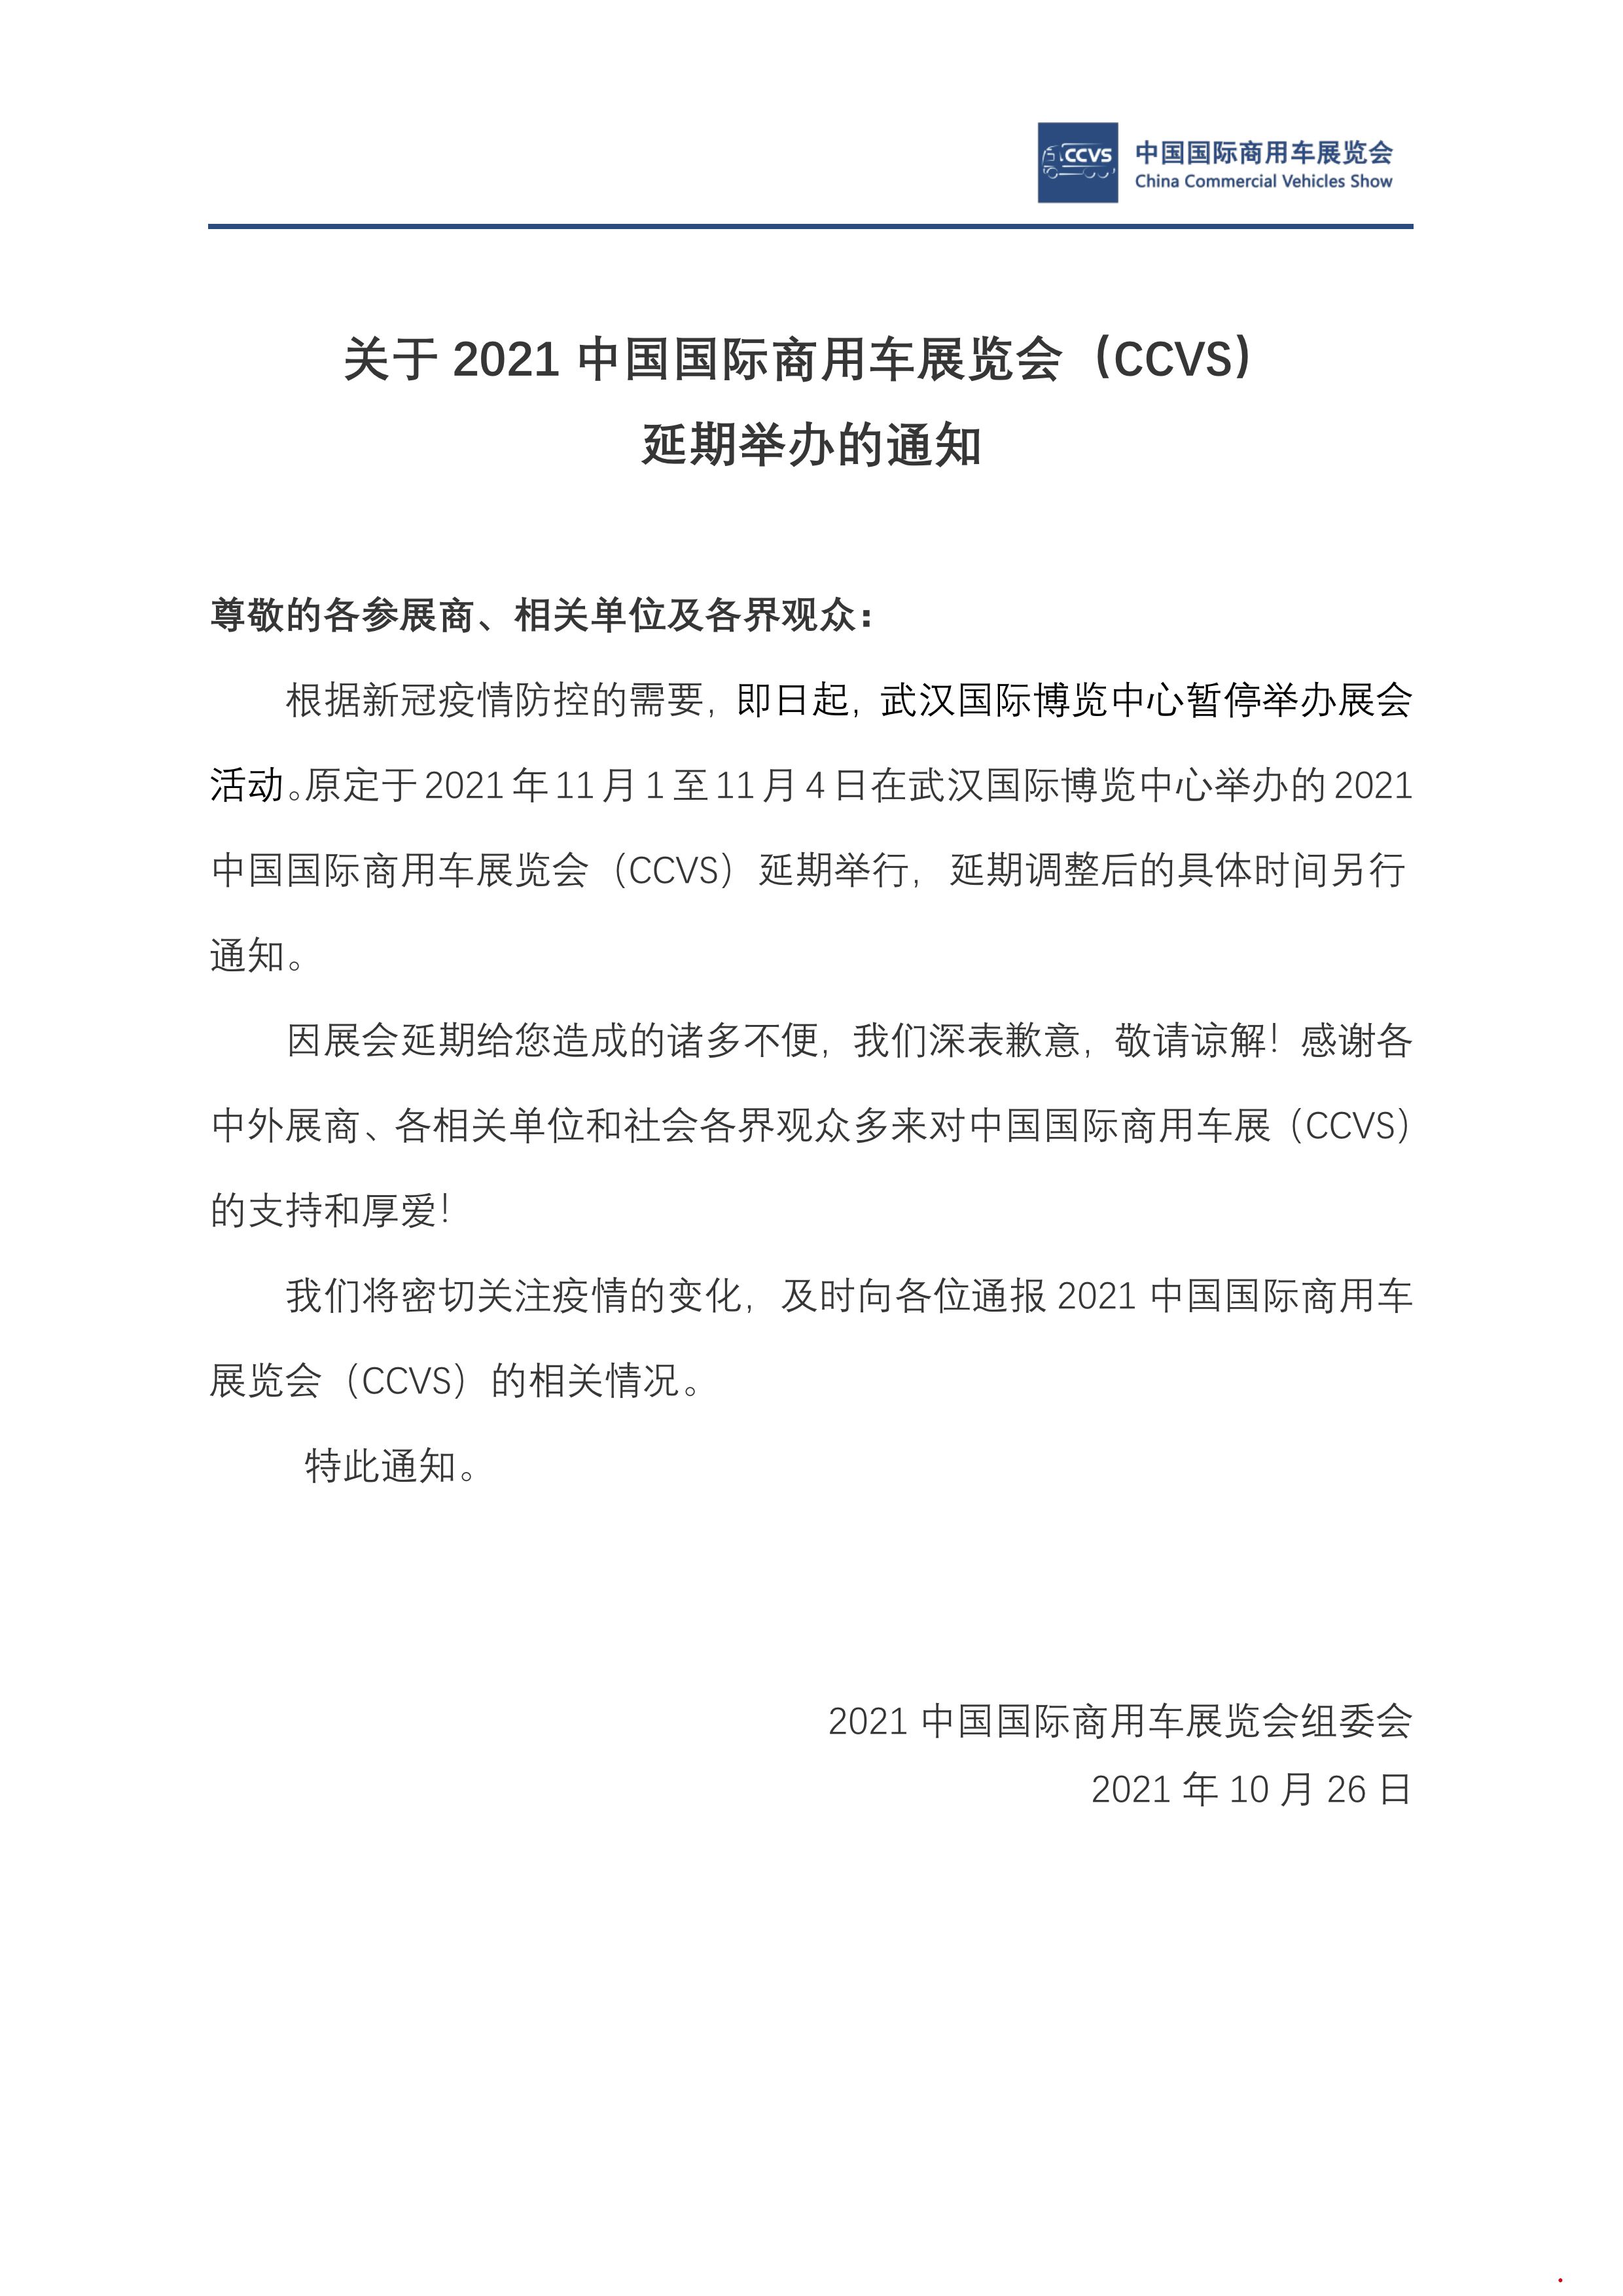 2021中国国际商用车展（CCVS）延期举办通知.jpg